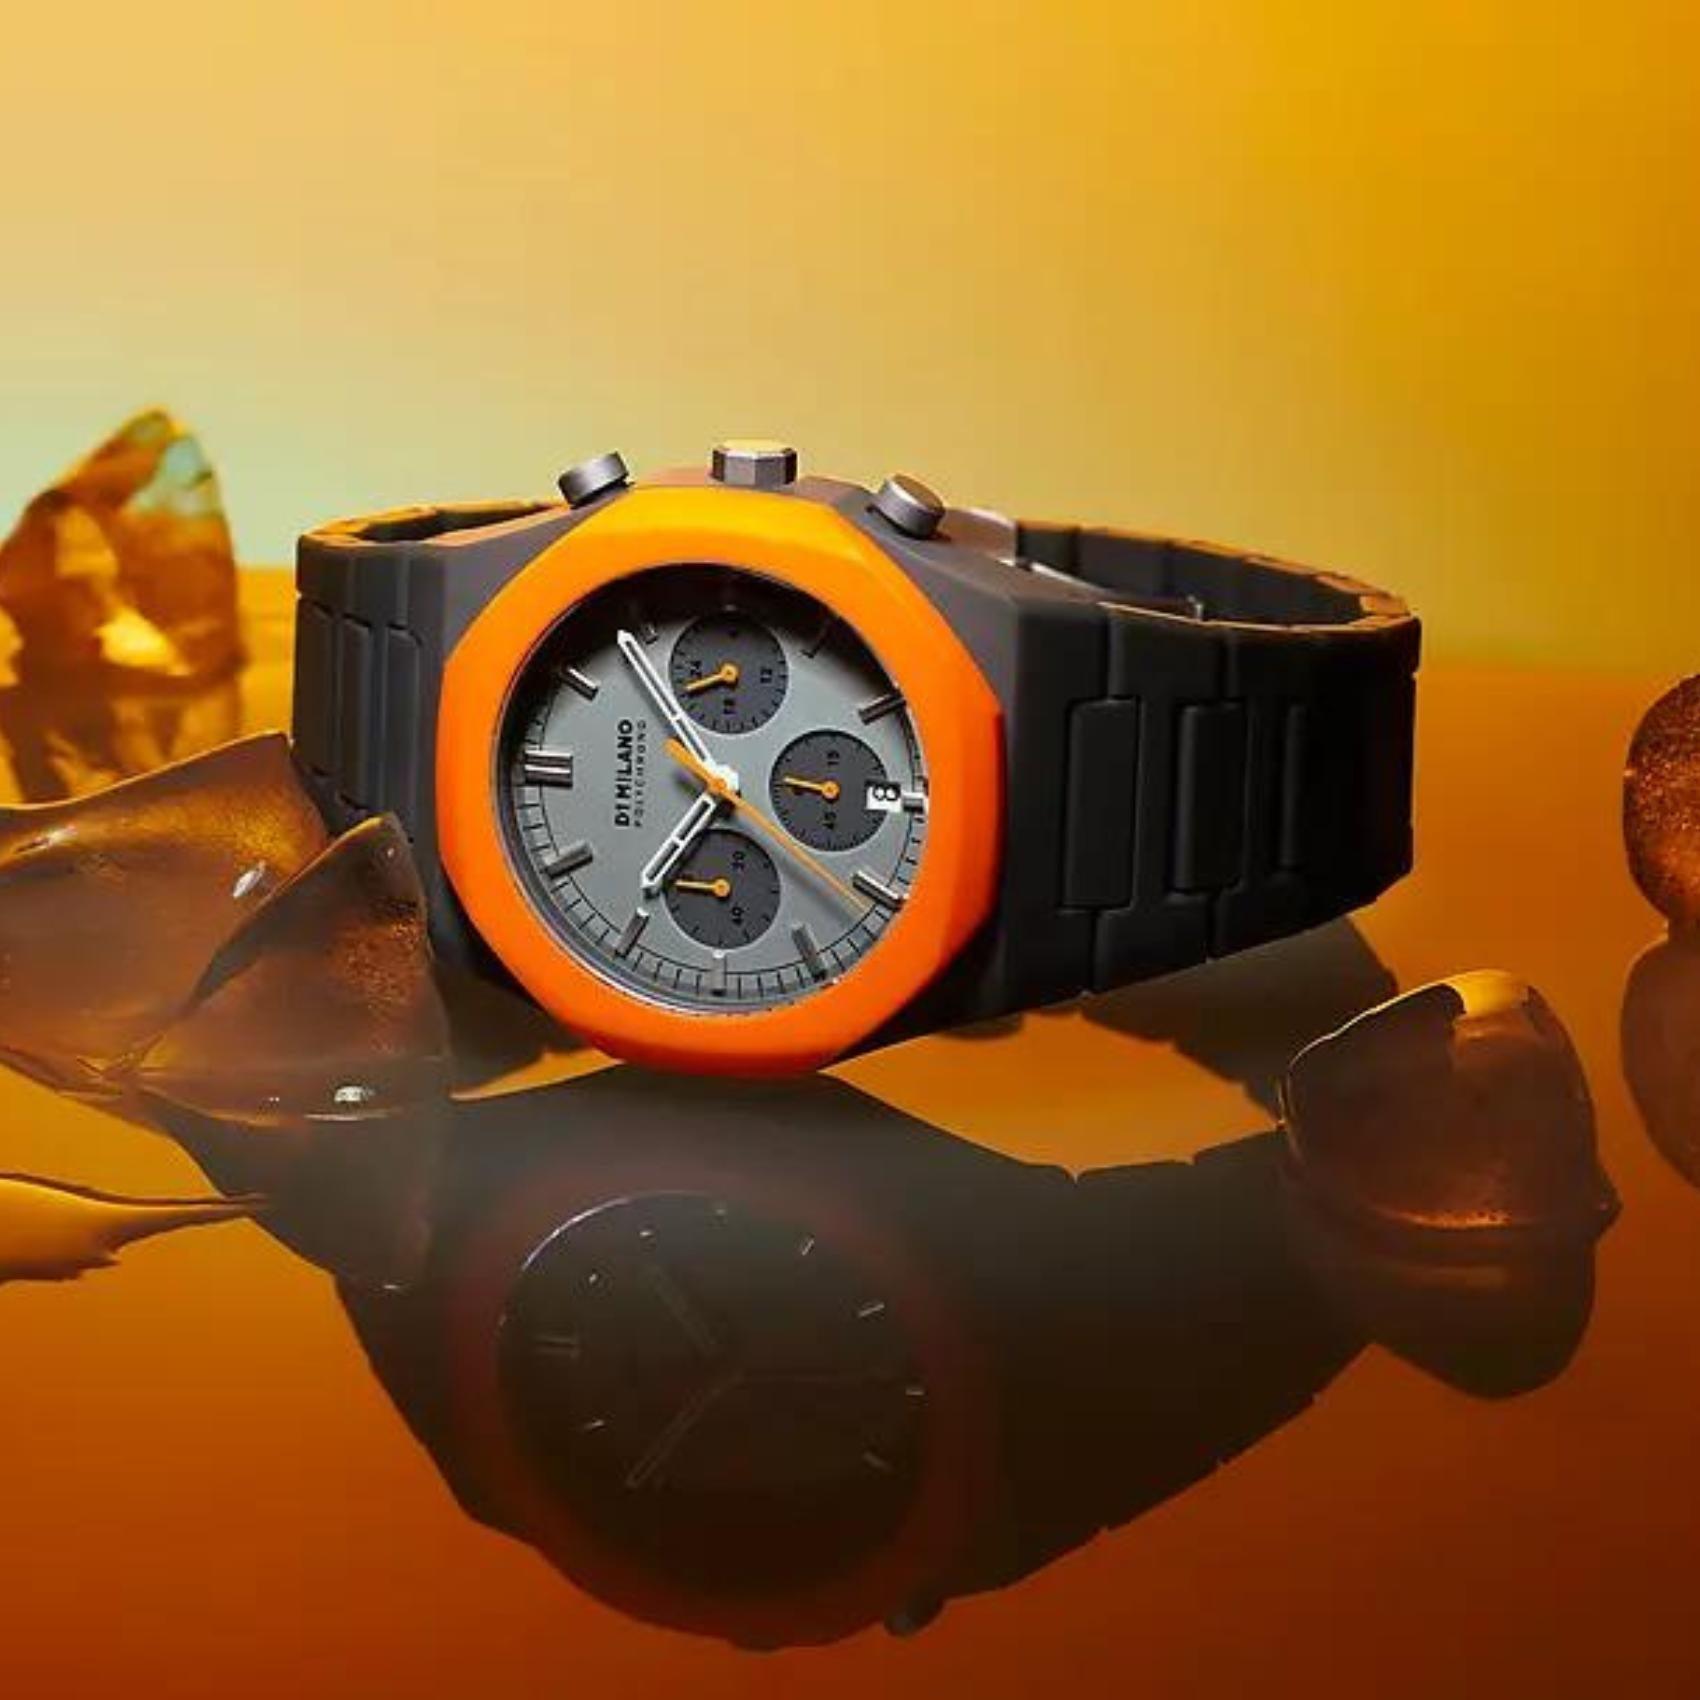 Ρολόι D1 Milano Black Blast D1-PHBJ01 χρονογράφος με ανθρακί ατσάλινο μπρασελέ και γκρι-πορτοκαλί καντράν 40.5mm με οκτάγωνο σχήμα.